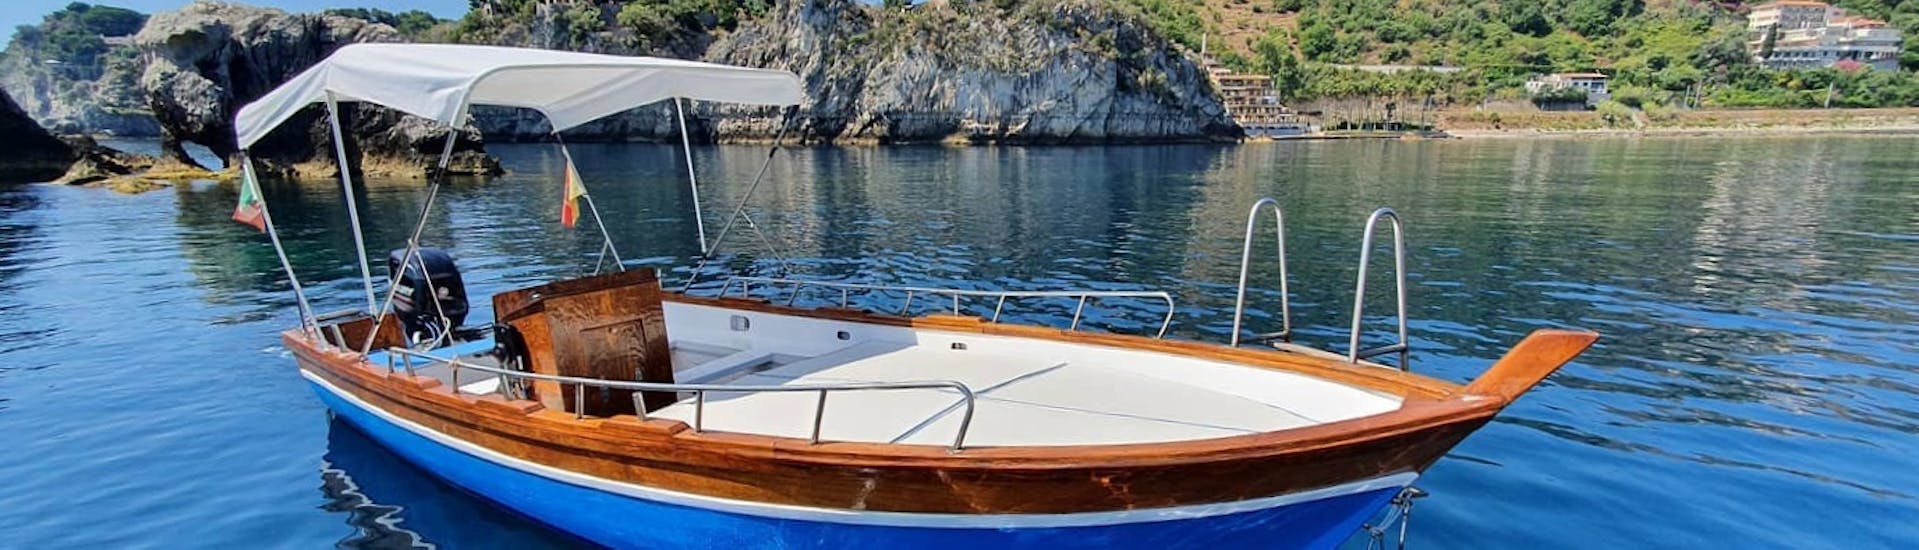 Foto van de boot die is gebruikt voor de boottocht vanuit Taormina met wijnproeverij met Boat Experience Taormina.